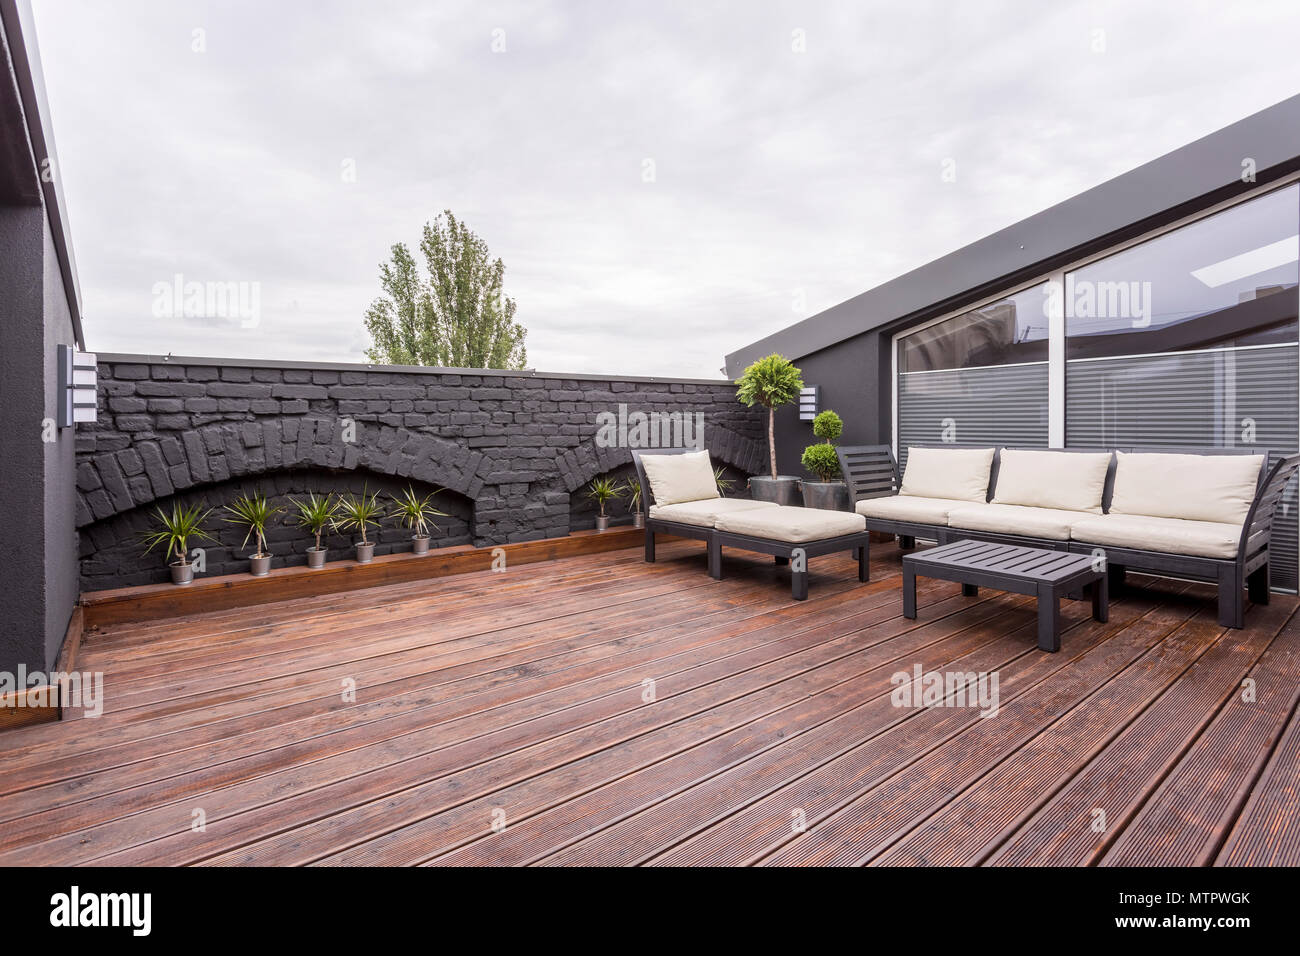 Pflanzen und beige Gartenmöbel auf der Terrasse mit Holzboden und schwarze Wand Stockfoto